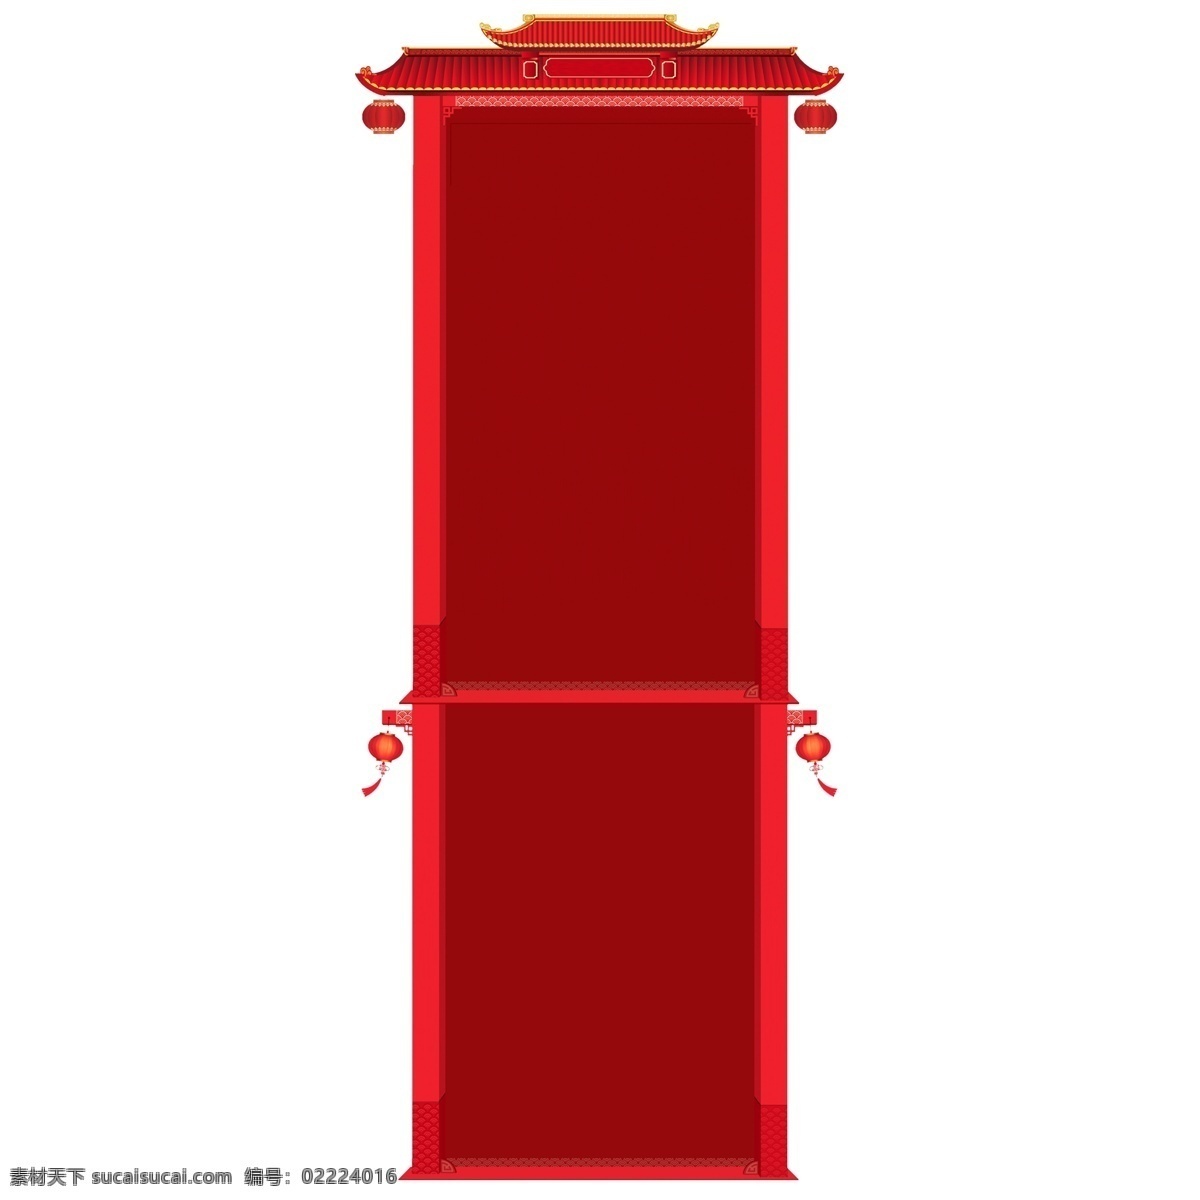 红色 中国 风 边框 红灯笼 复古建筑顶 中国风 设计素材 纹理边框